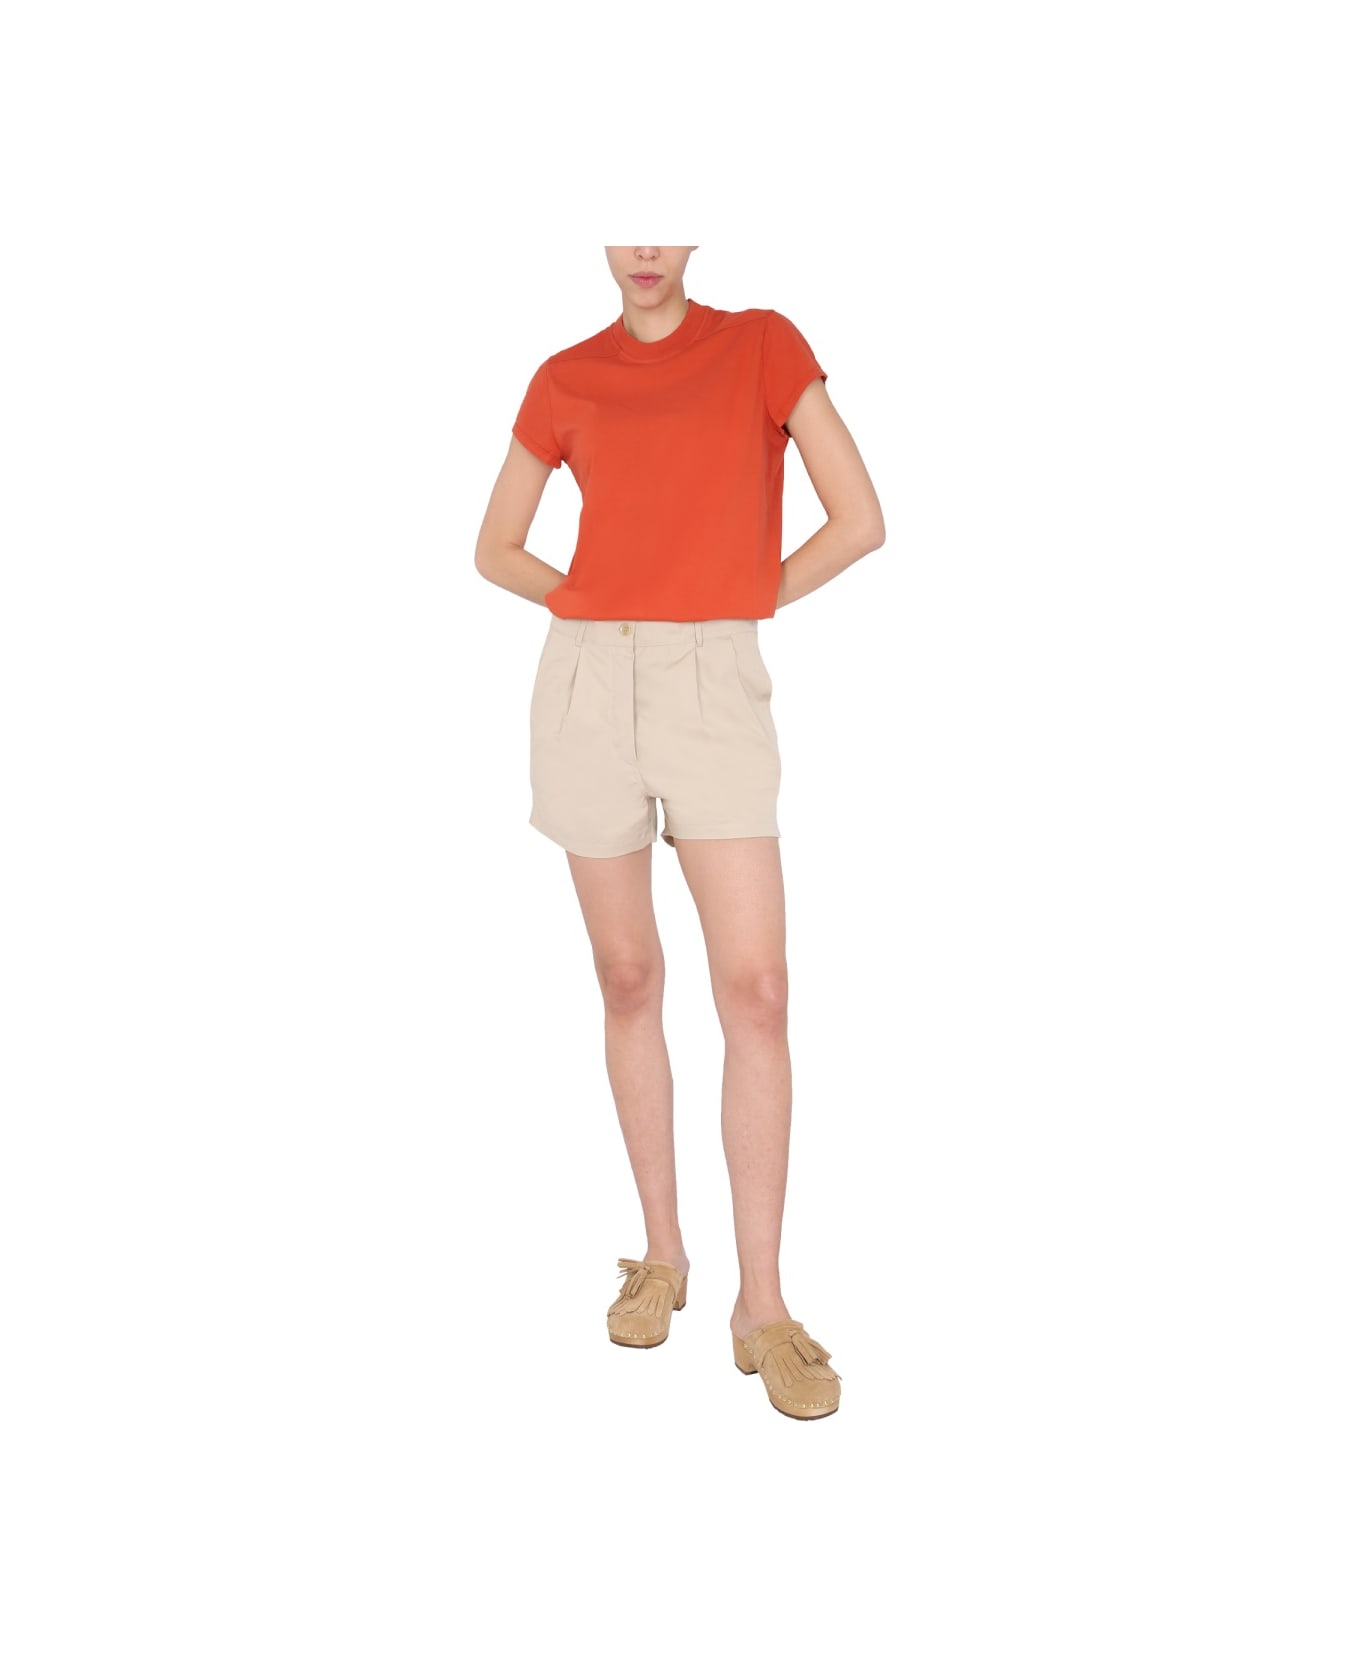 Aspesi Cotton Shorts - BEIGE ショートパンツ